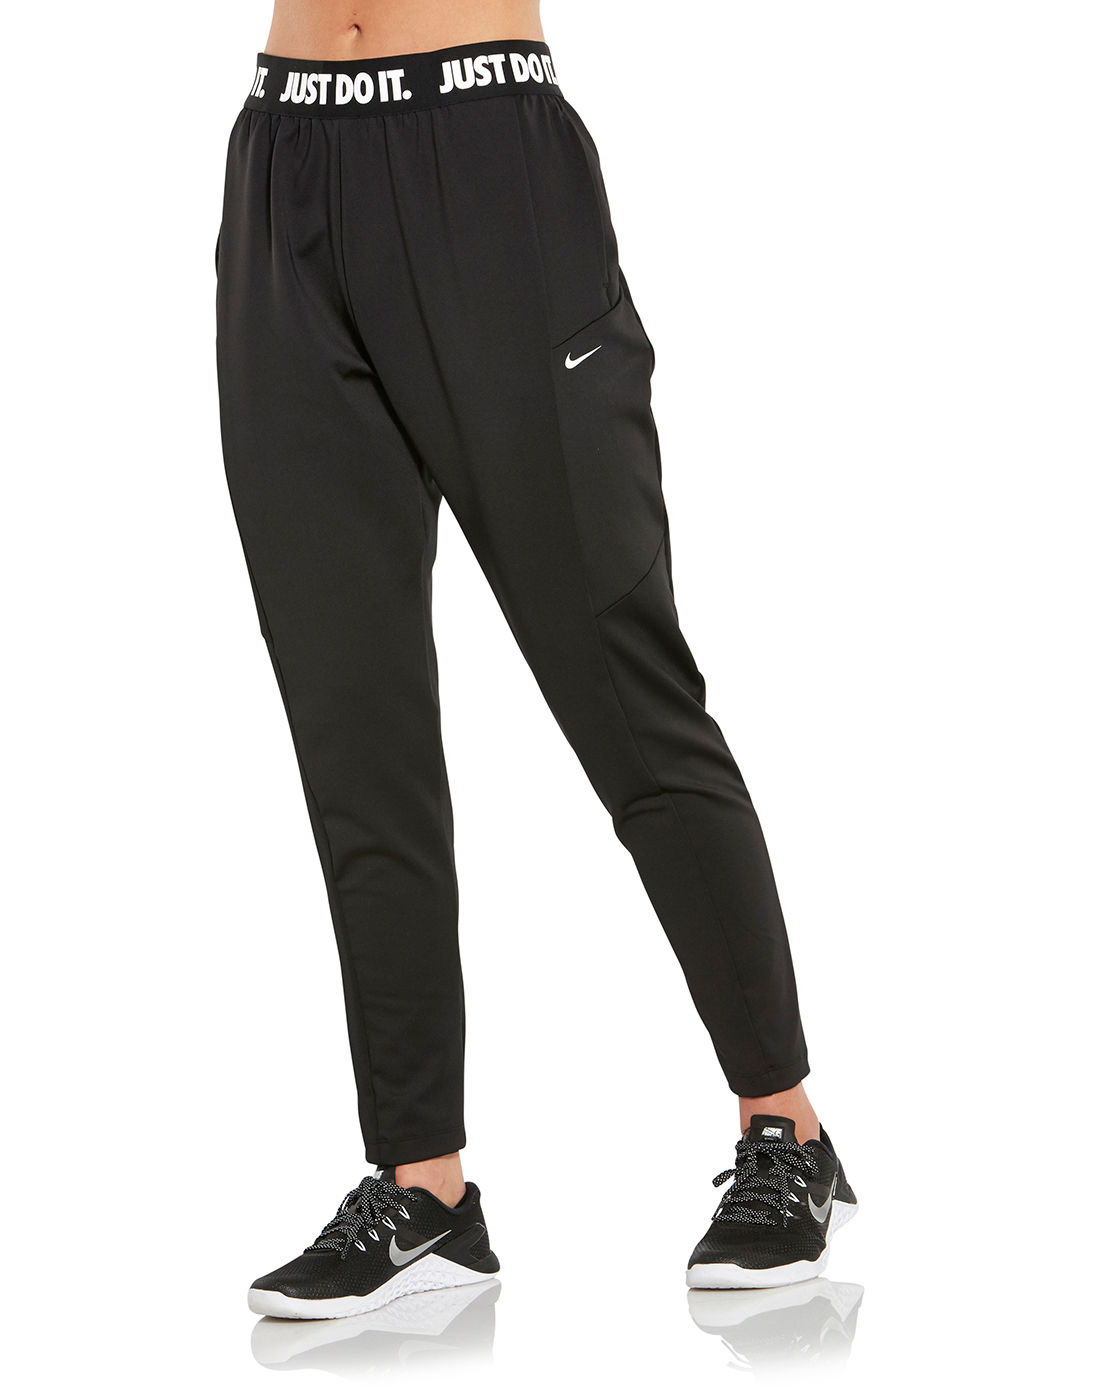 Women's Black Nike Gym Pants | Life Style Sports